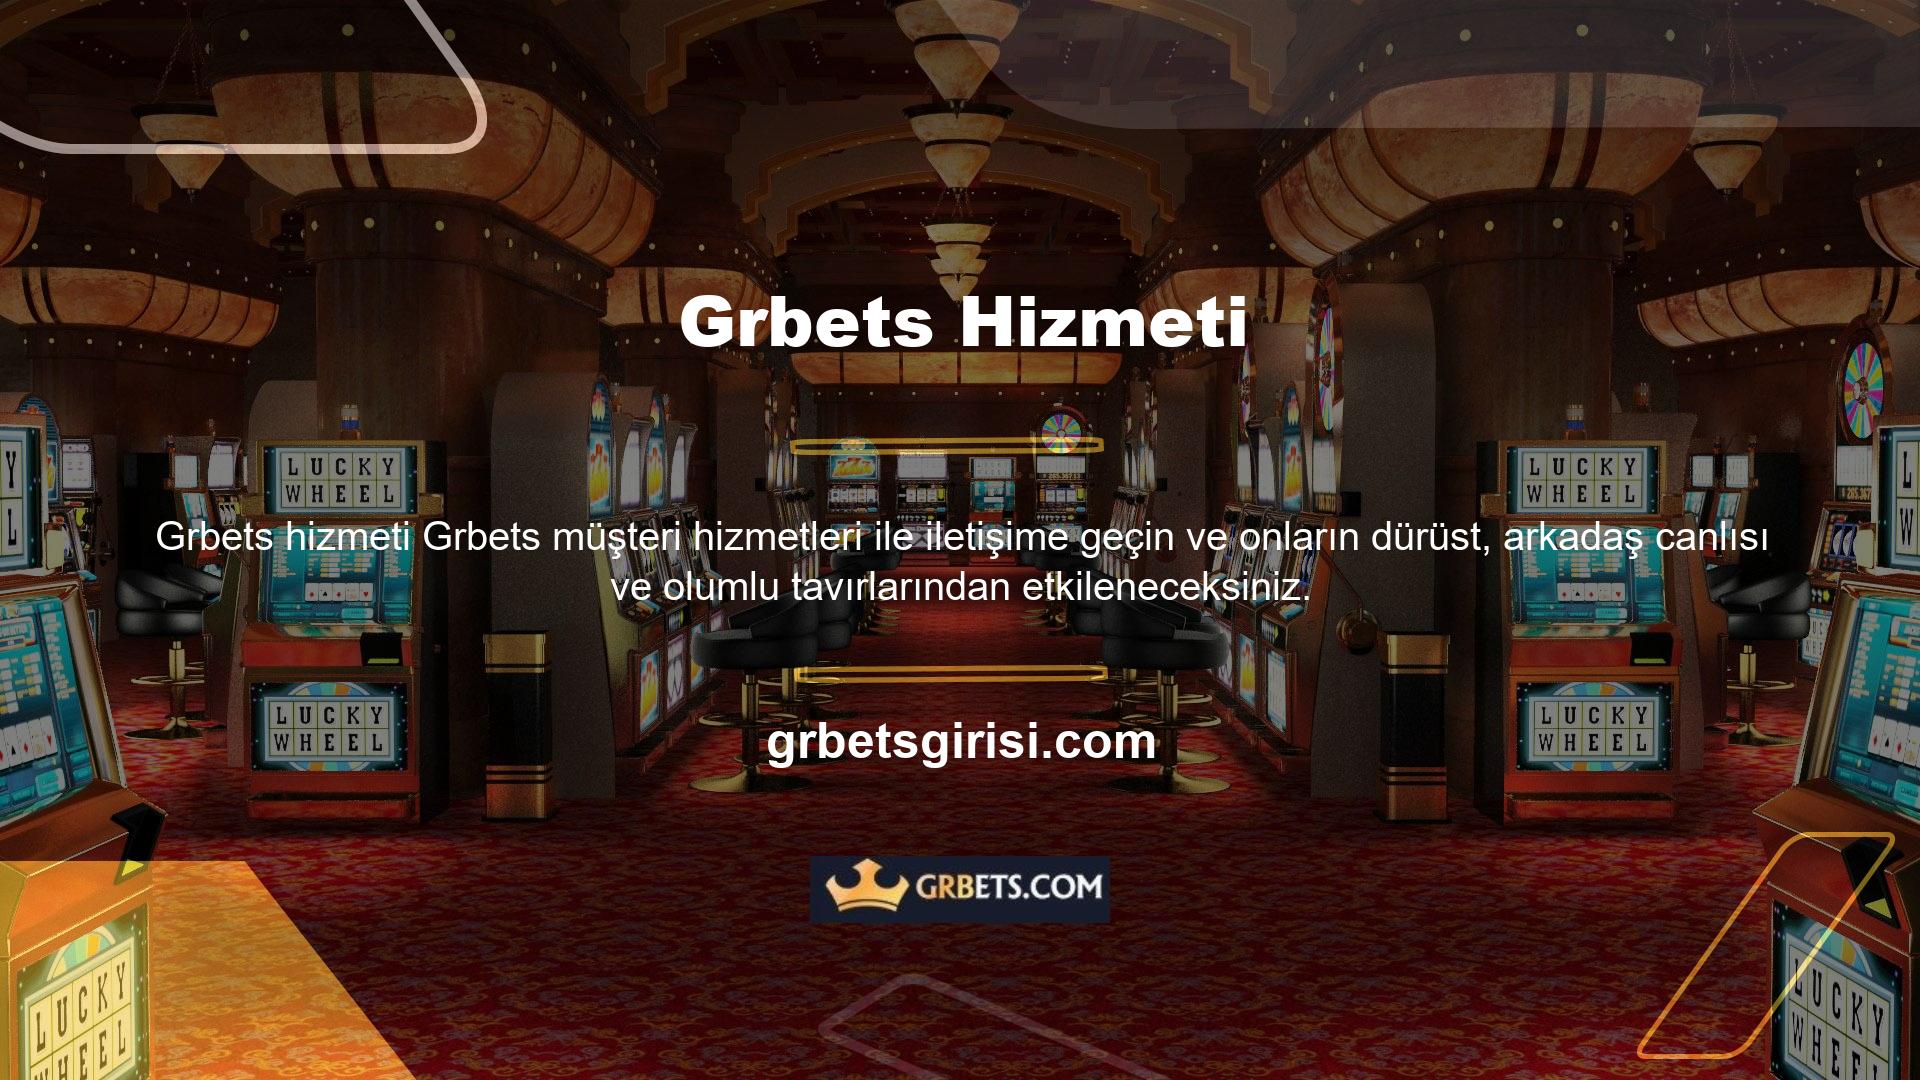 Grbets, müşteri hizmetlerinin önemini anlayan bir oyun sitesidir